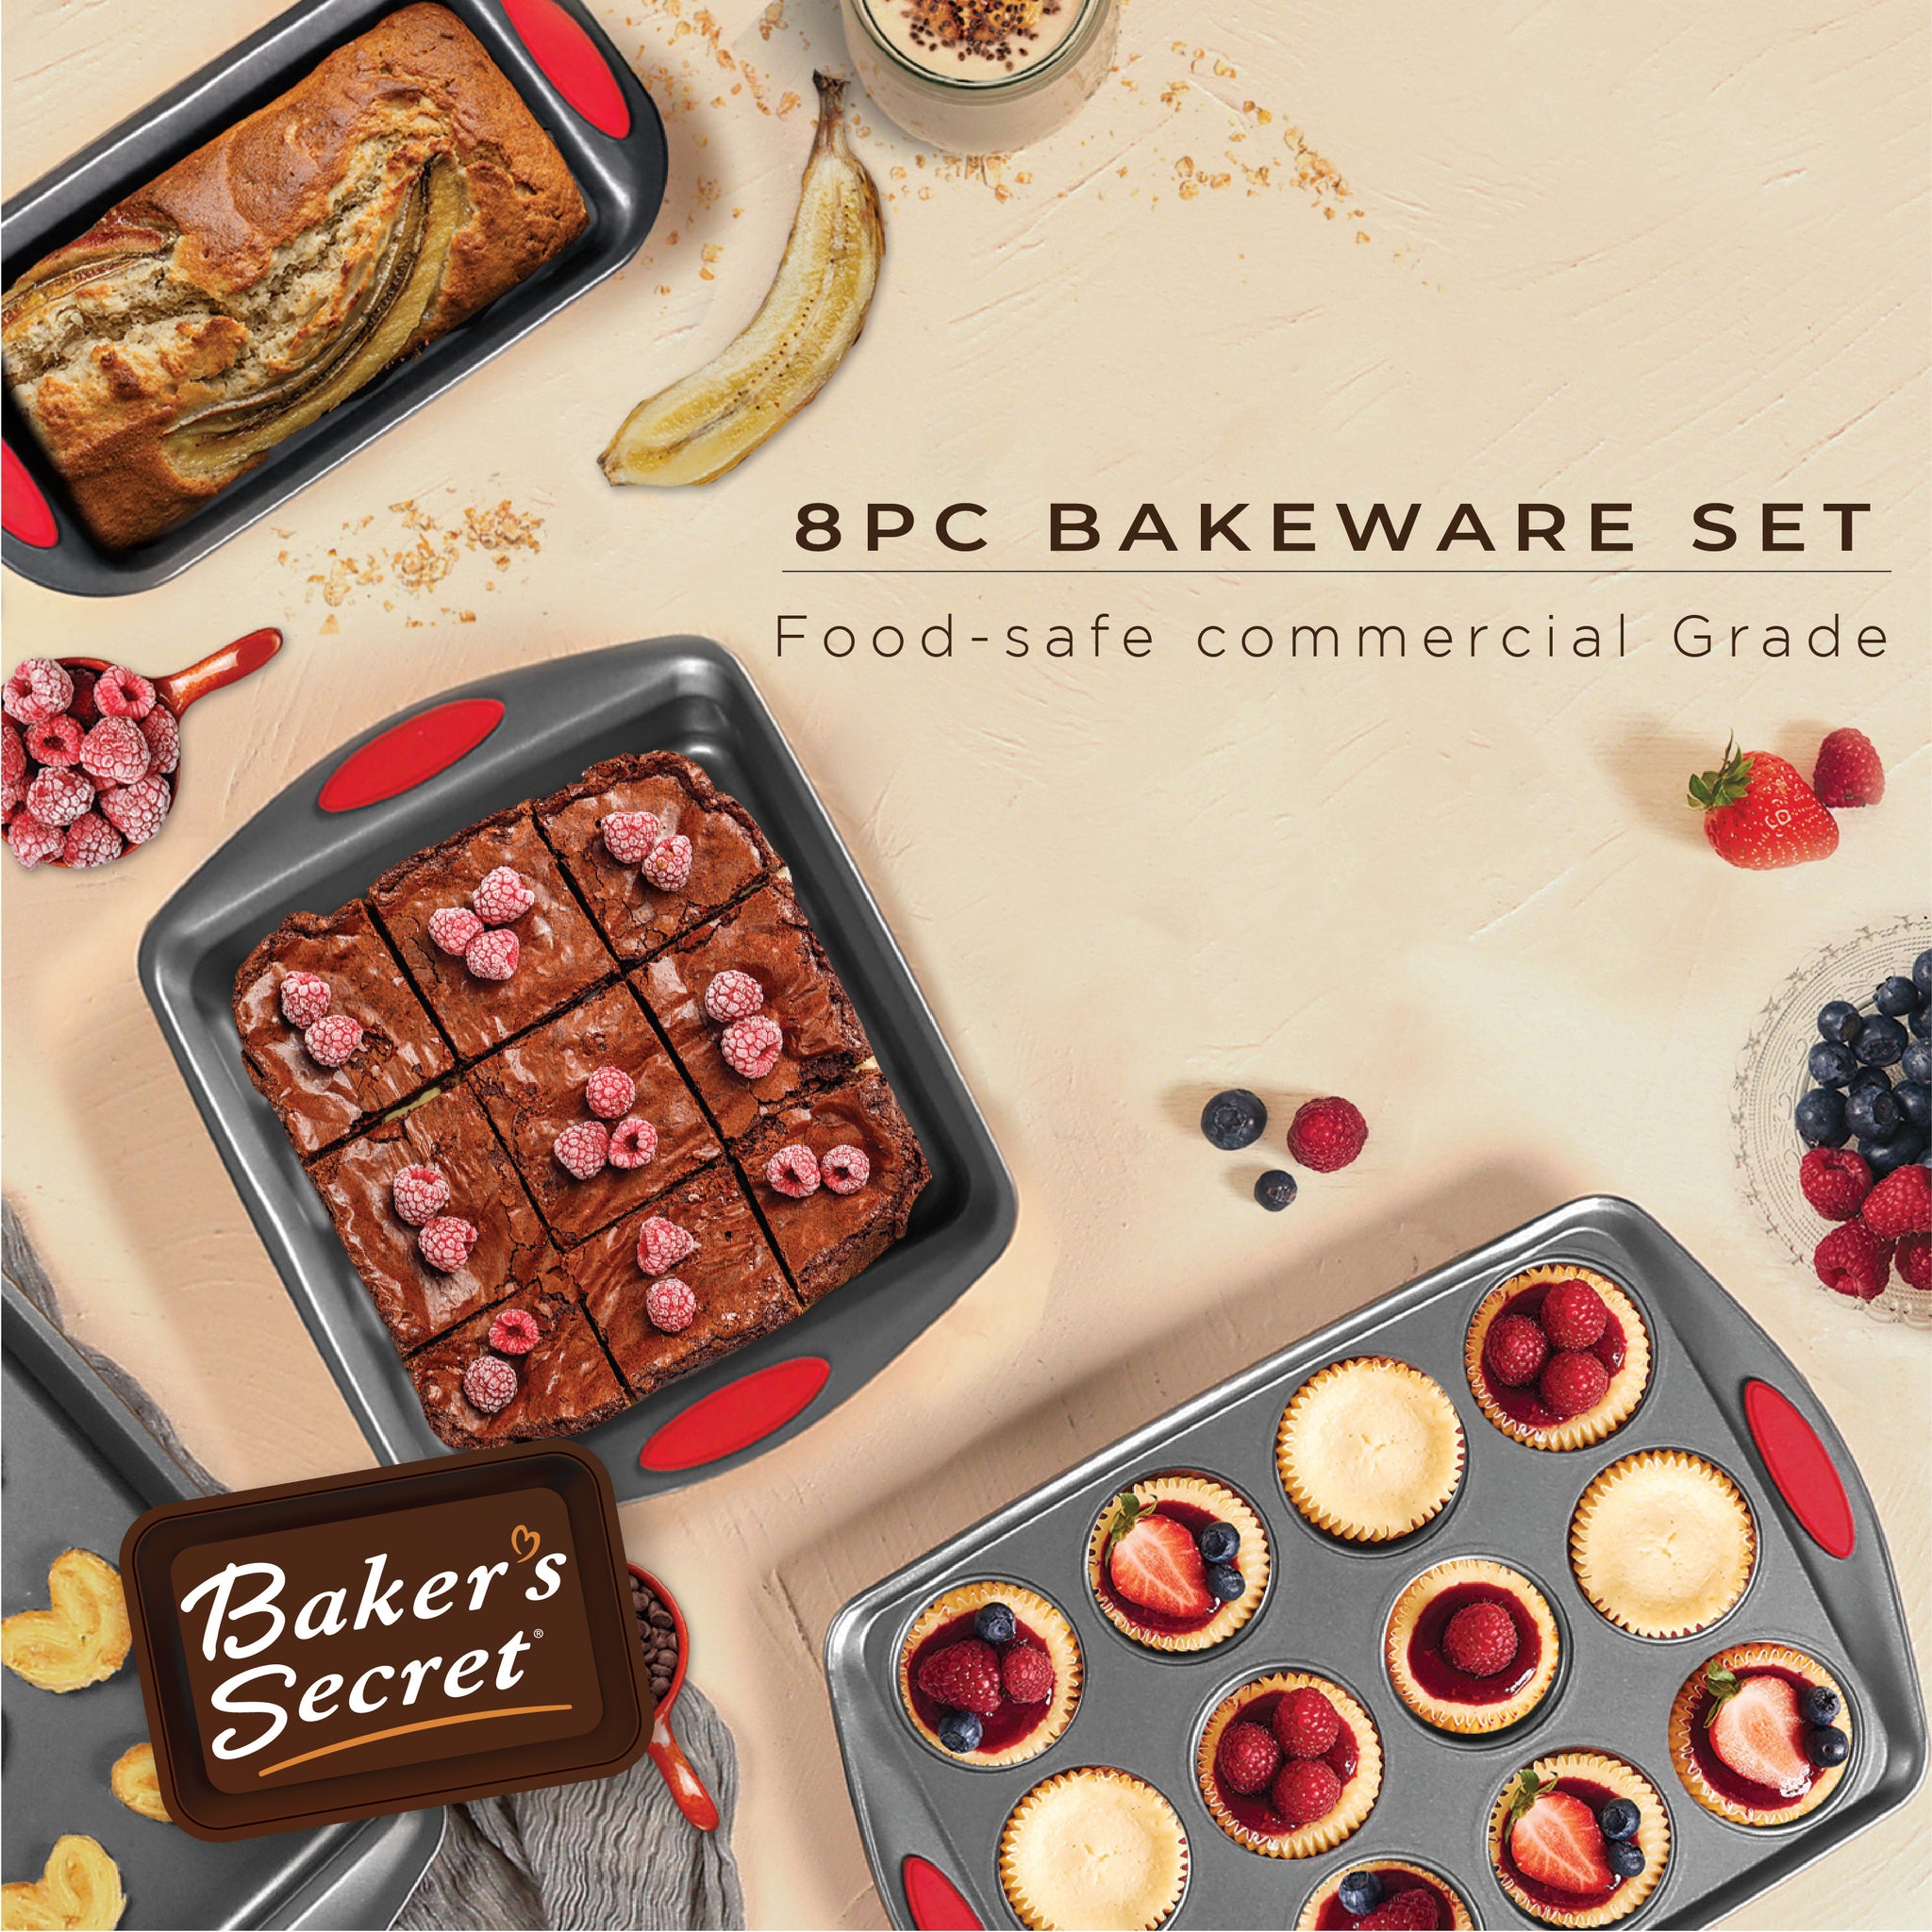 Bakeware set of 8  Bakeware Sets - Baker's Secret